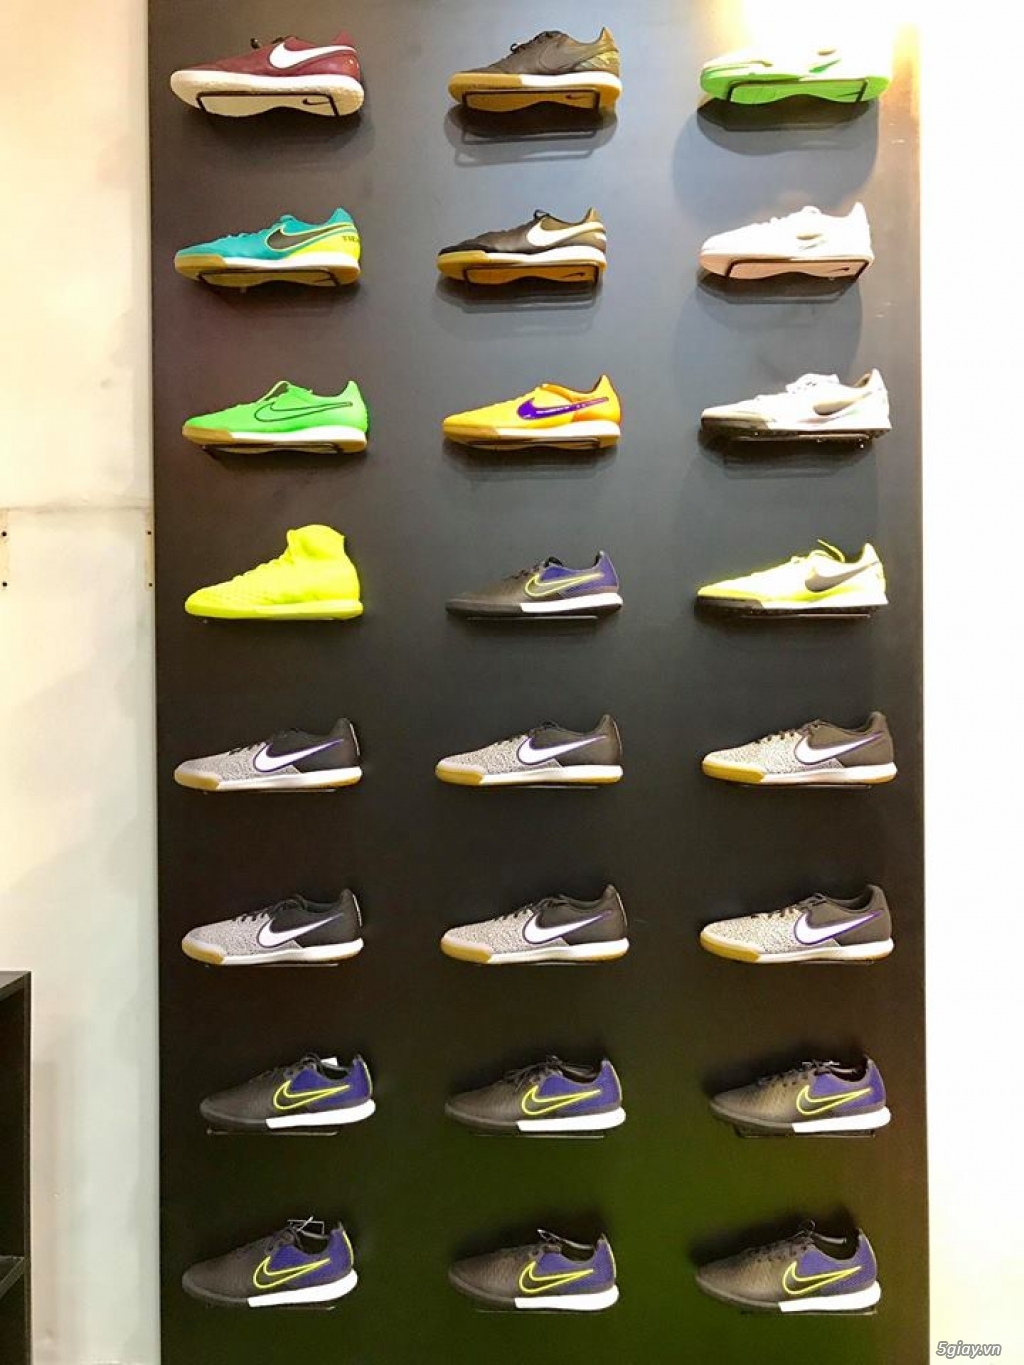 Giày Futsal + Cỏ nhân tạo Nike Chính Hãng 100% (Nike Football Shoes) - 46